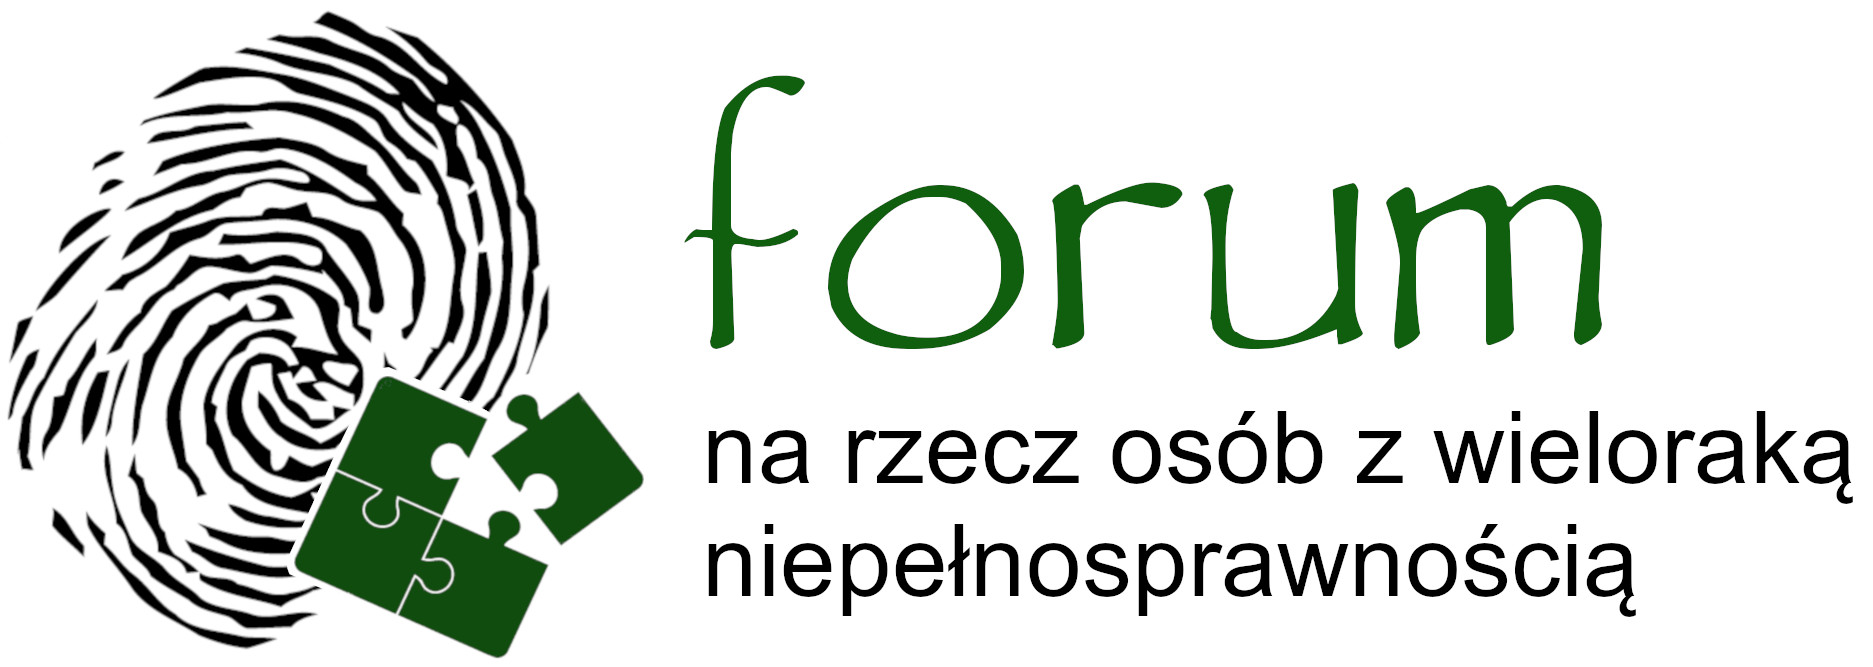 Forum_logo ostateczne.jpg